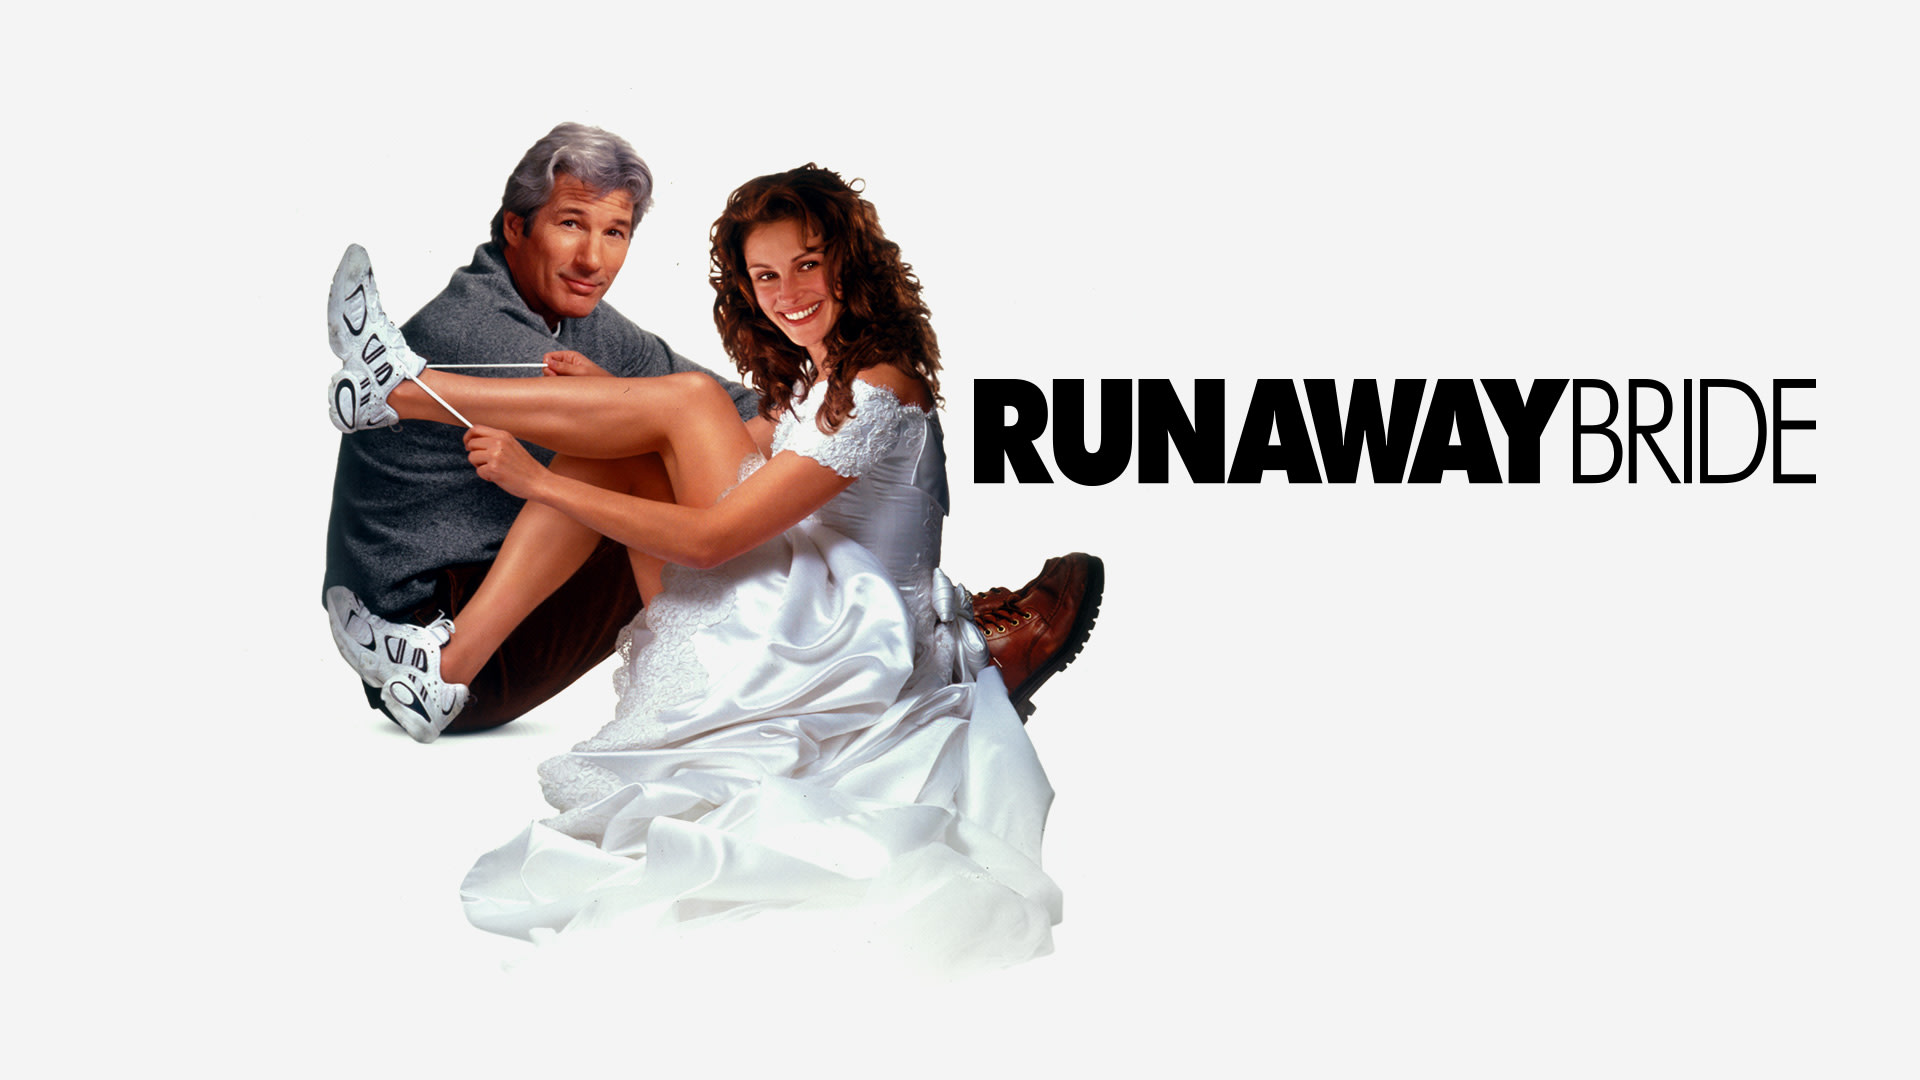 Watch Runaway Bride